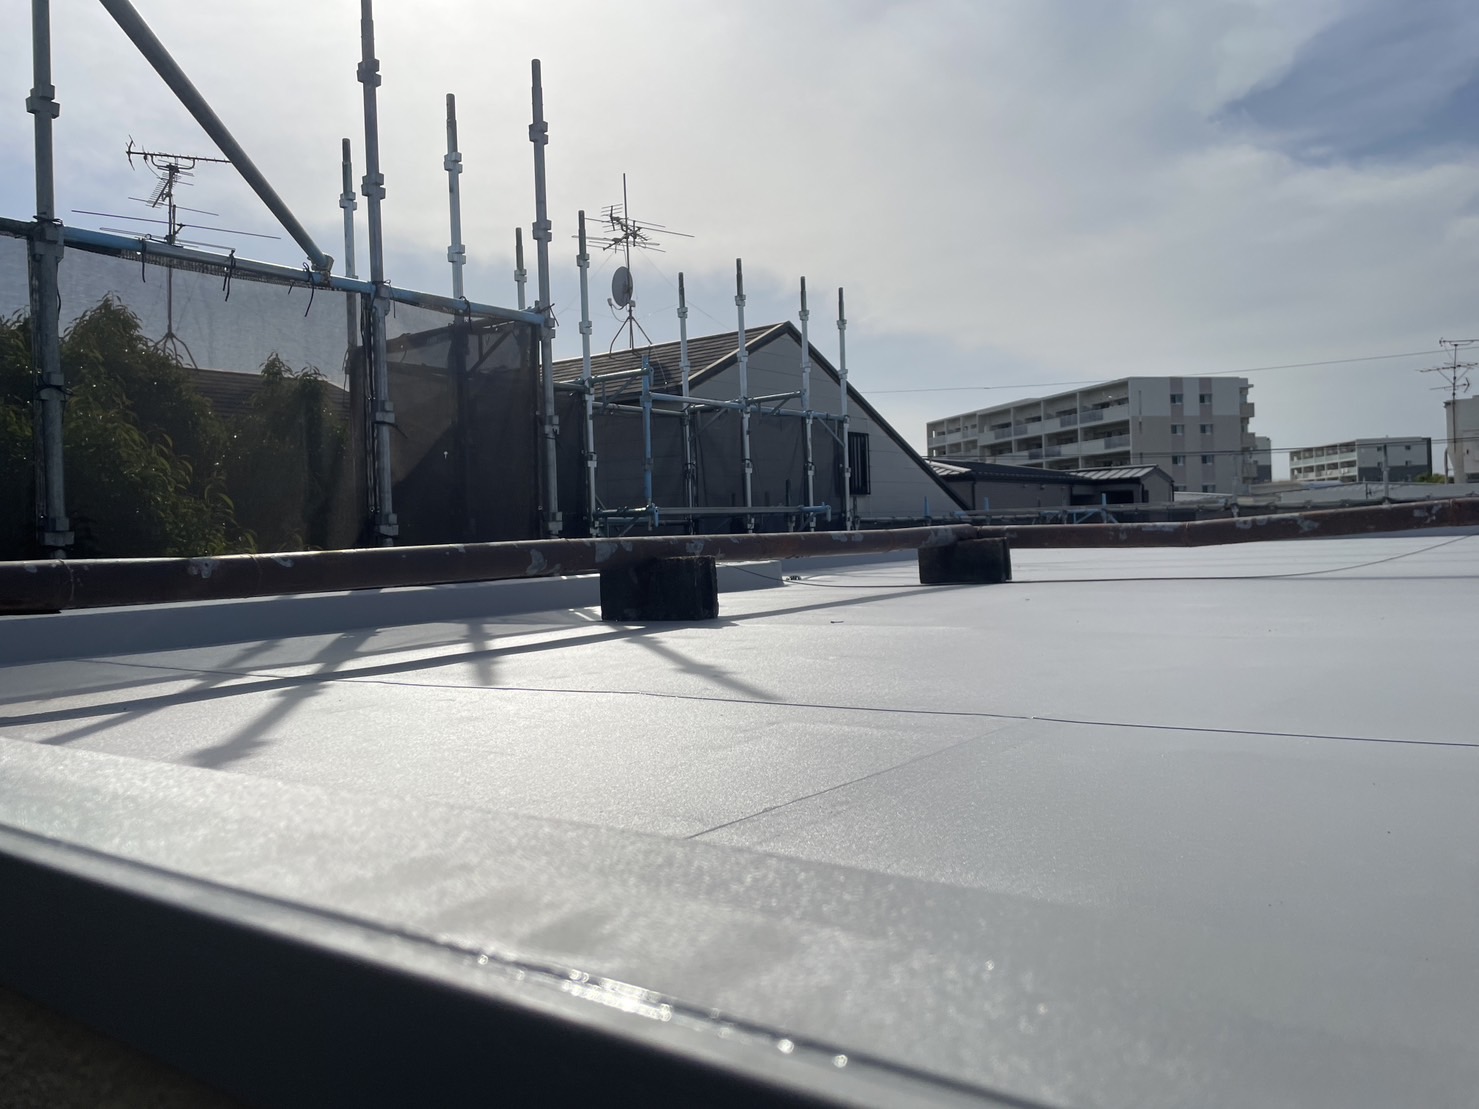 屋上のシート防水